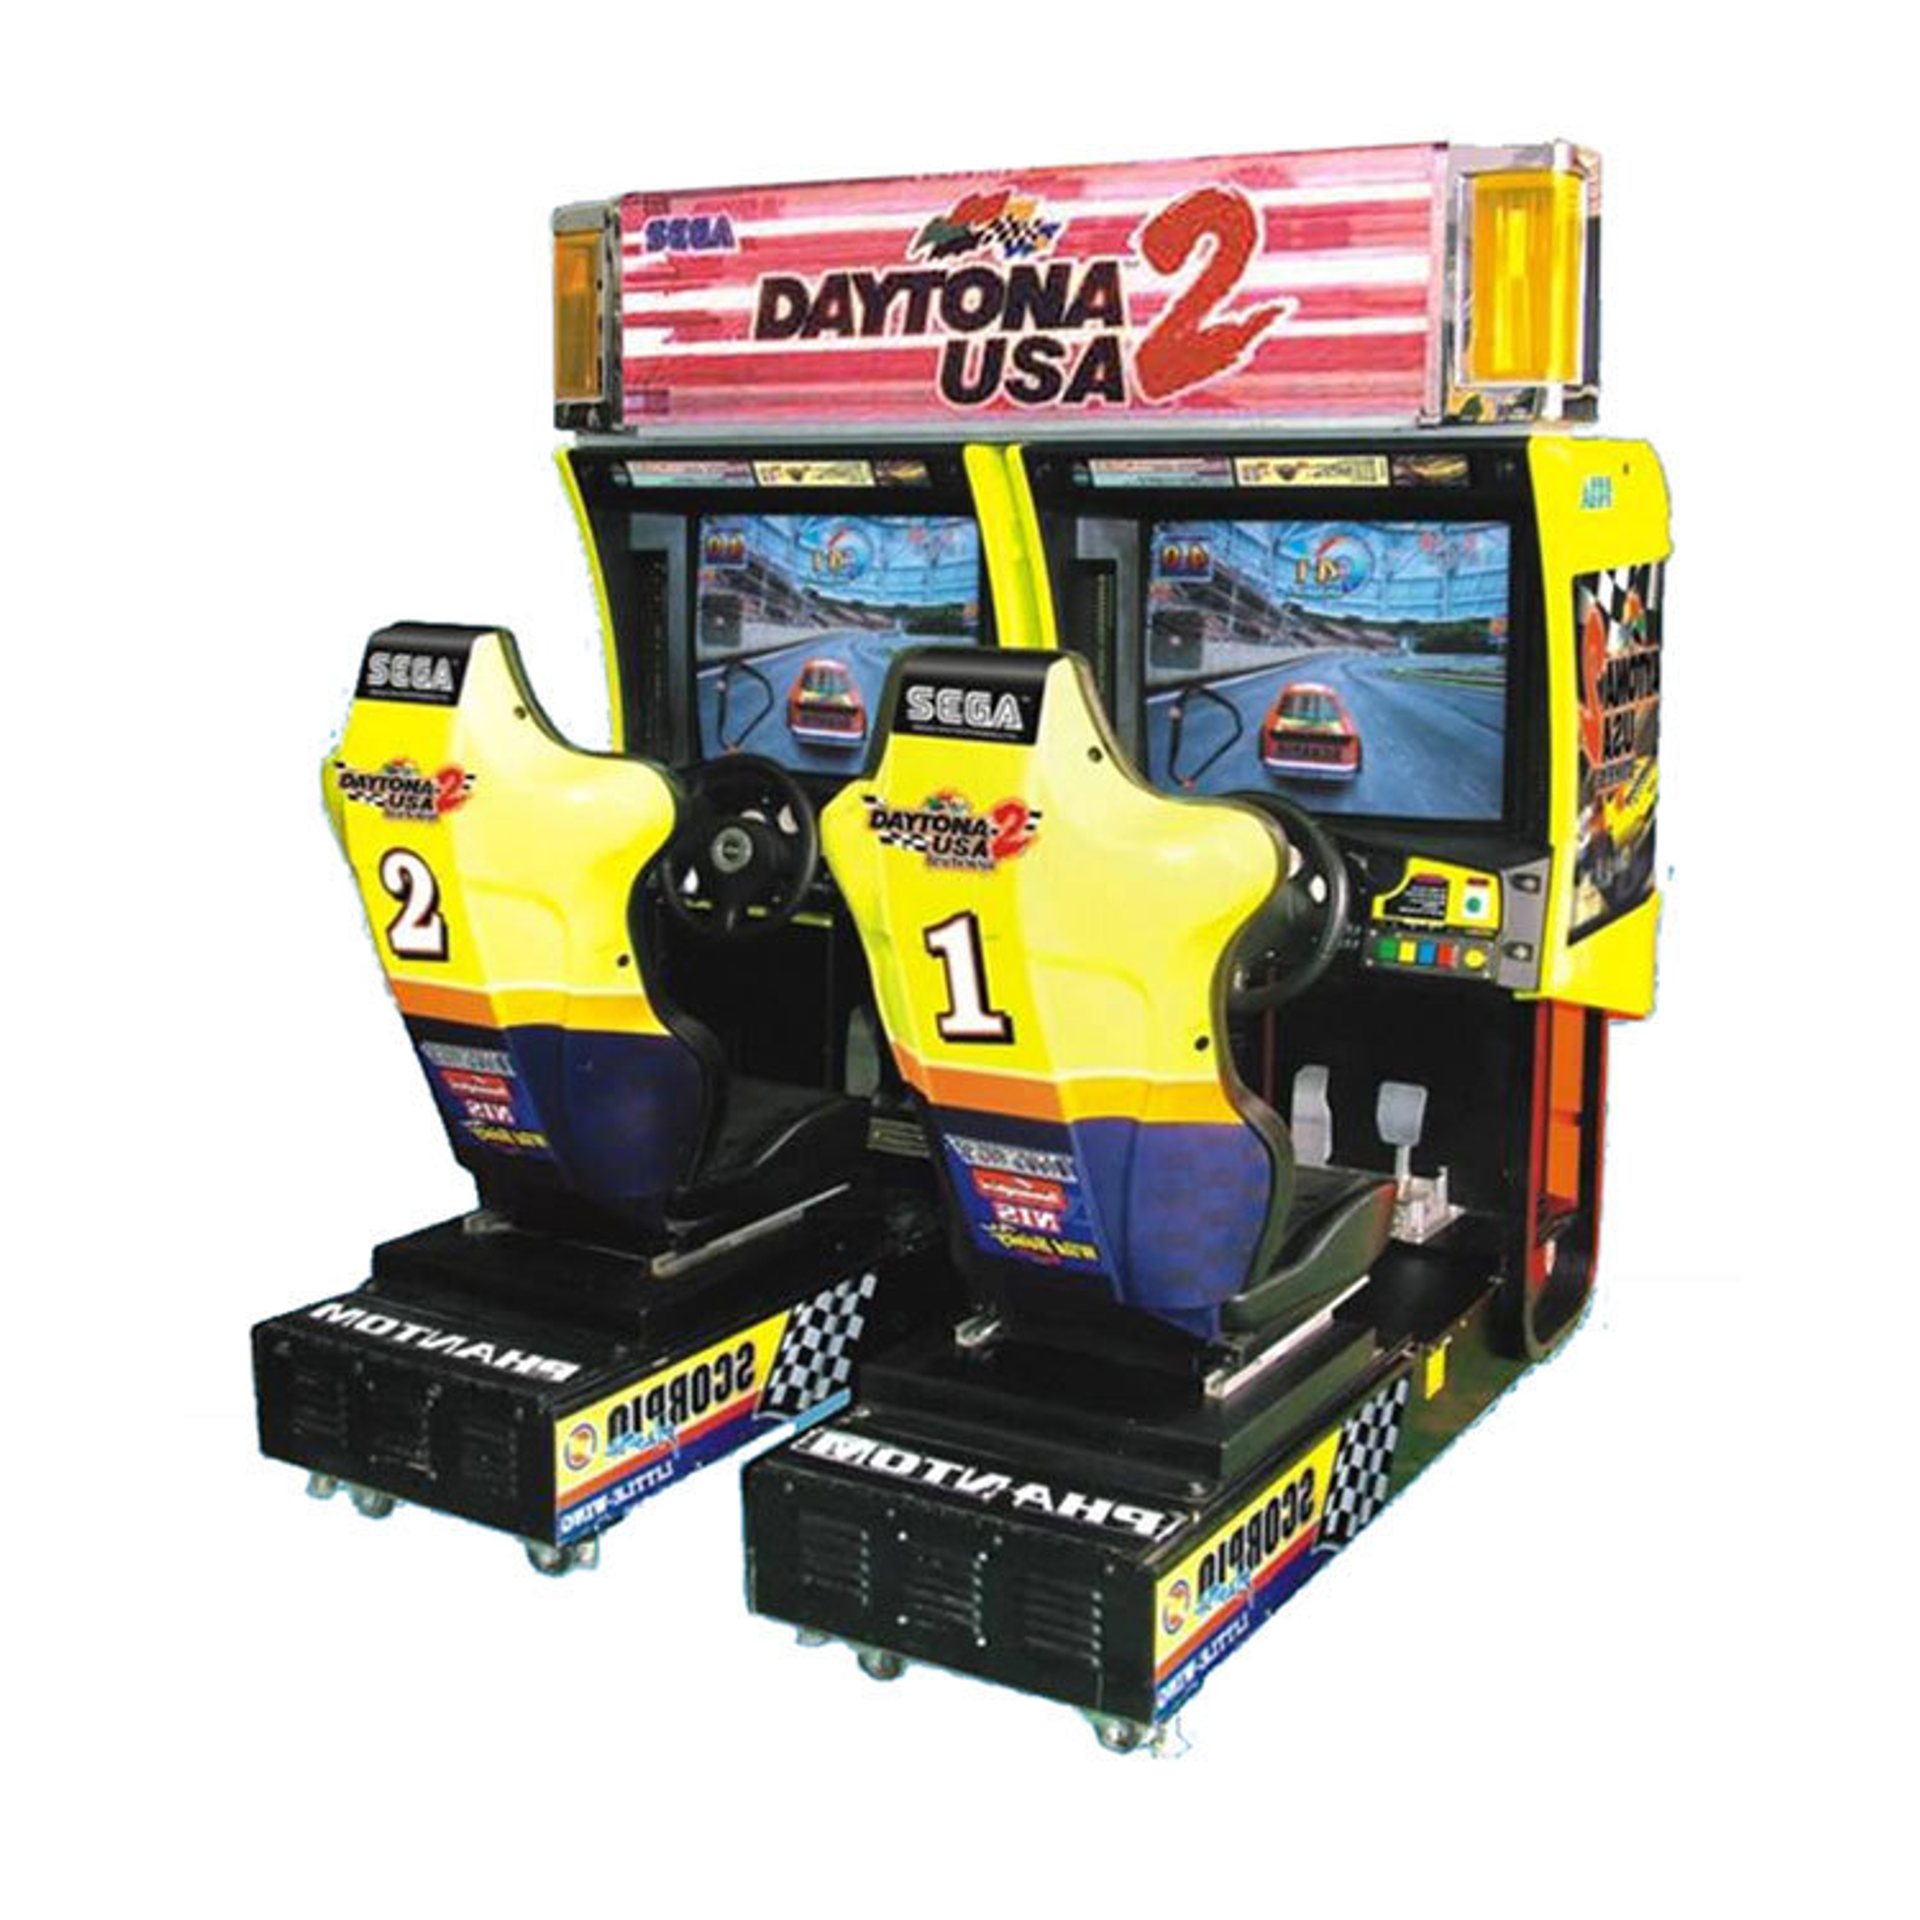 Sega Daytona 2 twin